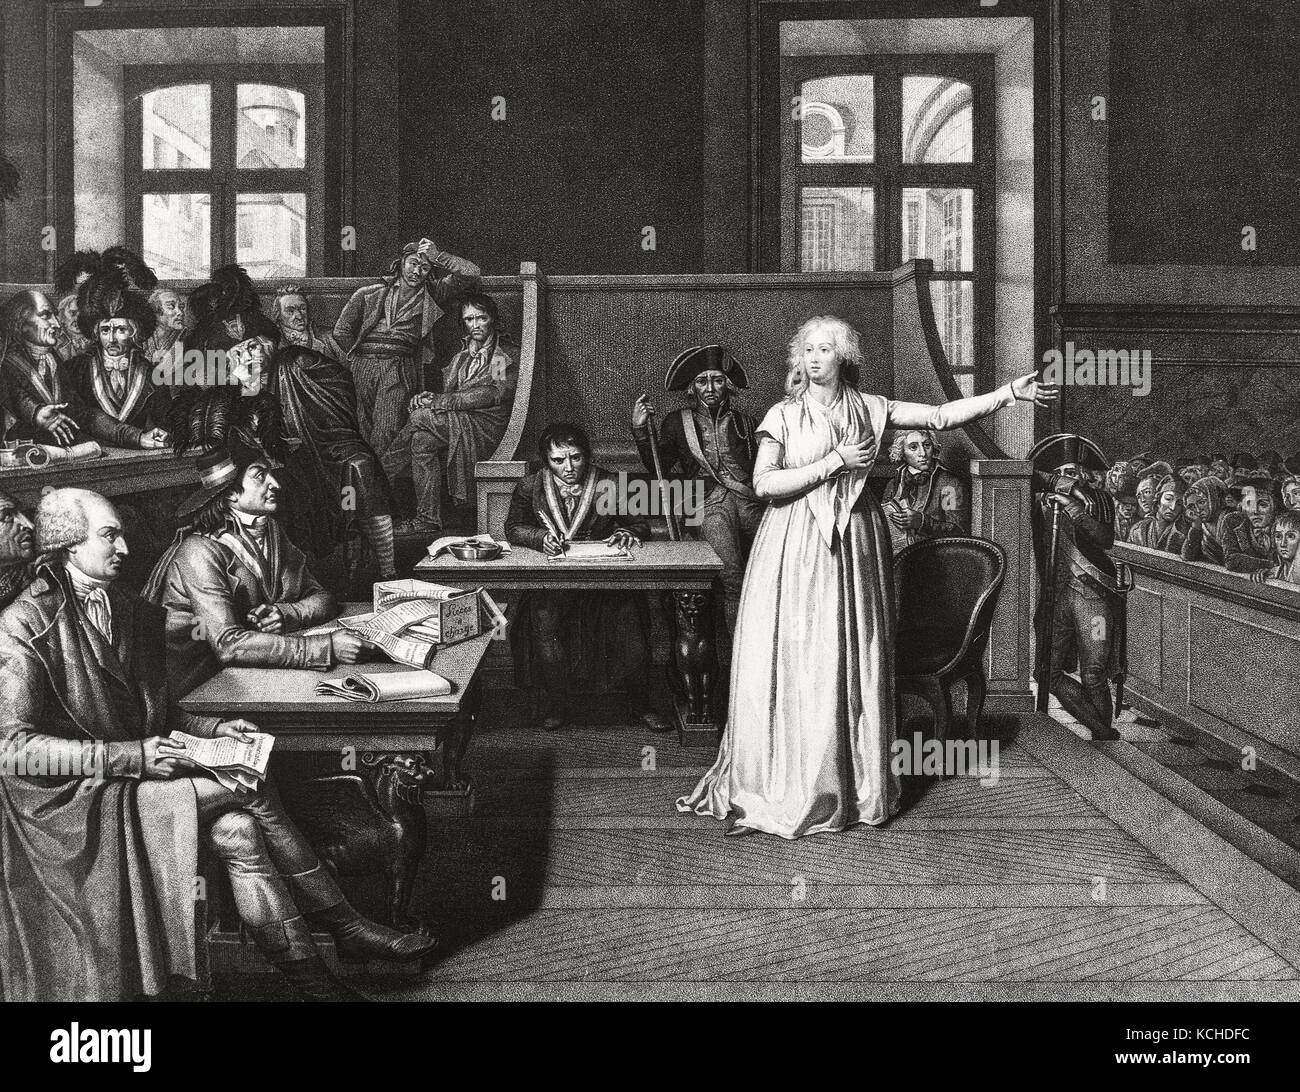 Marie Antoinette (1755-1793). Königin von Frankreich. Am 16. Oktober 1793, wurde sie ausprobiert und verurteilt. Marie Antoinette vor Gericht. Gravur. Stockfoto